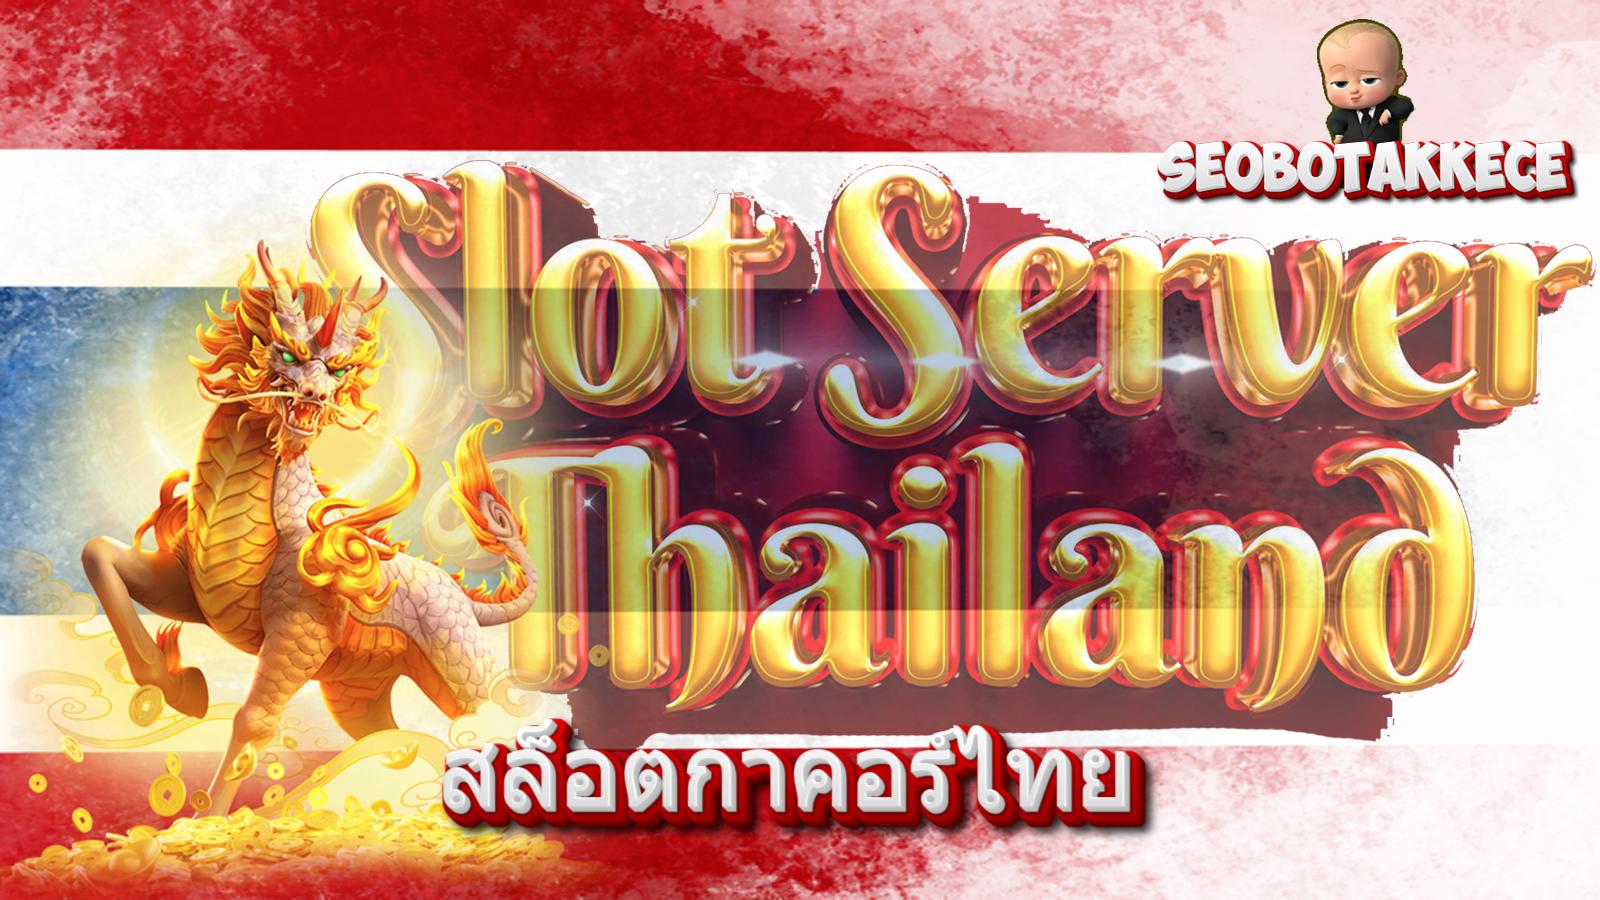 Situs Slot Server Thailand - Chess.com